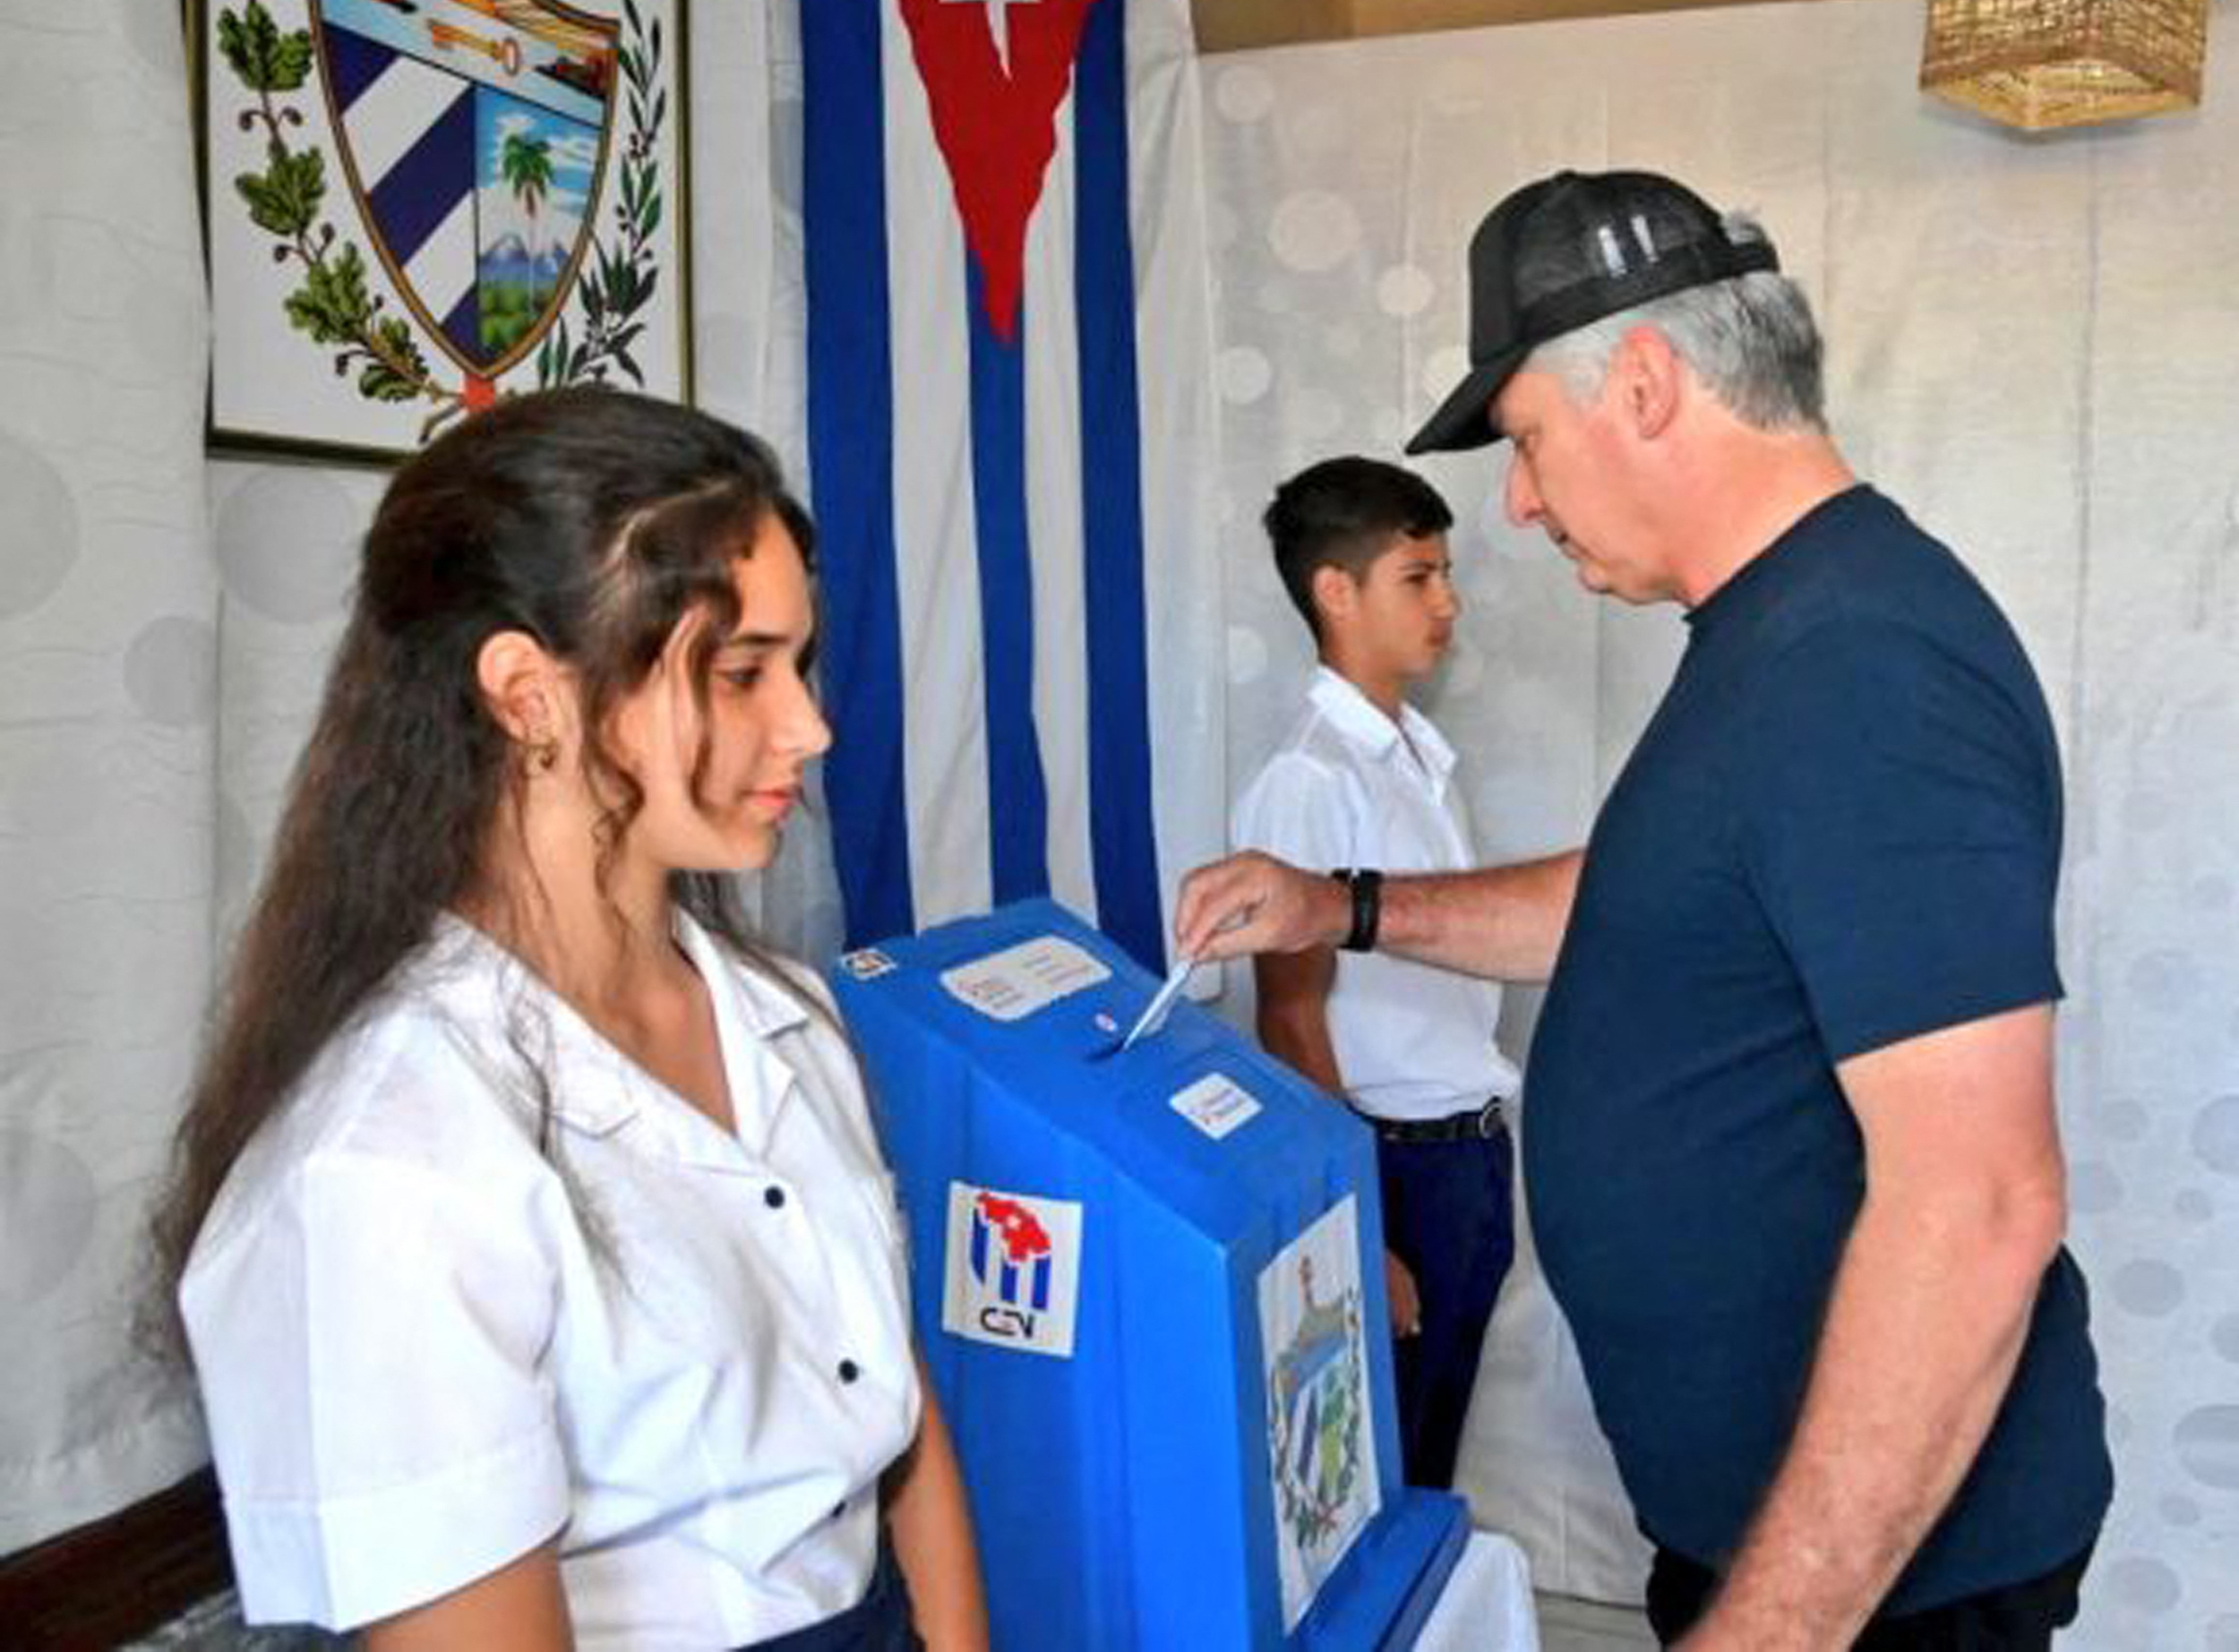 La revolución cubana se adjudica un 68% de apoyo tras «un mar de irregularidades»